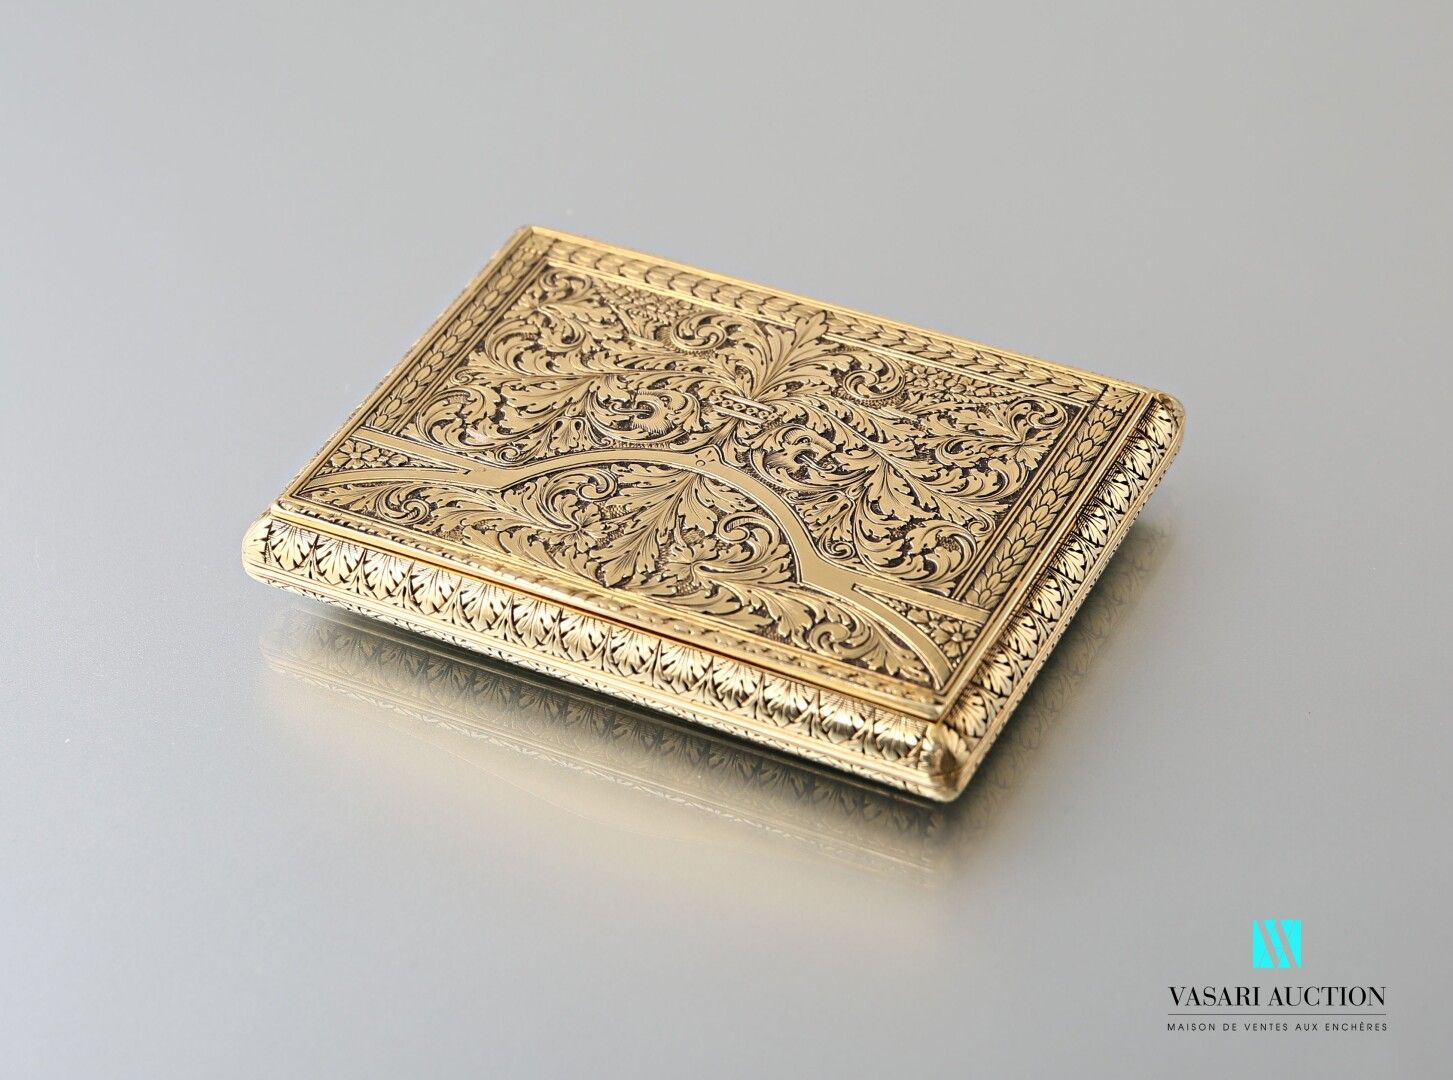 Null 黄金750千分之一鼻烟盒，带有丰富的叶子和刺桐叶的雕刻装饰，外国作品 十九世纪

重量：111.7克 尺寸：8 x 5.6 x 1.2厘米。